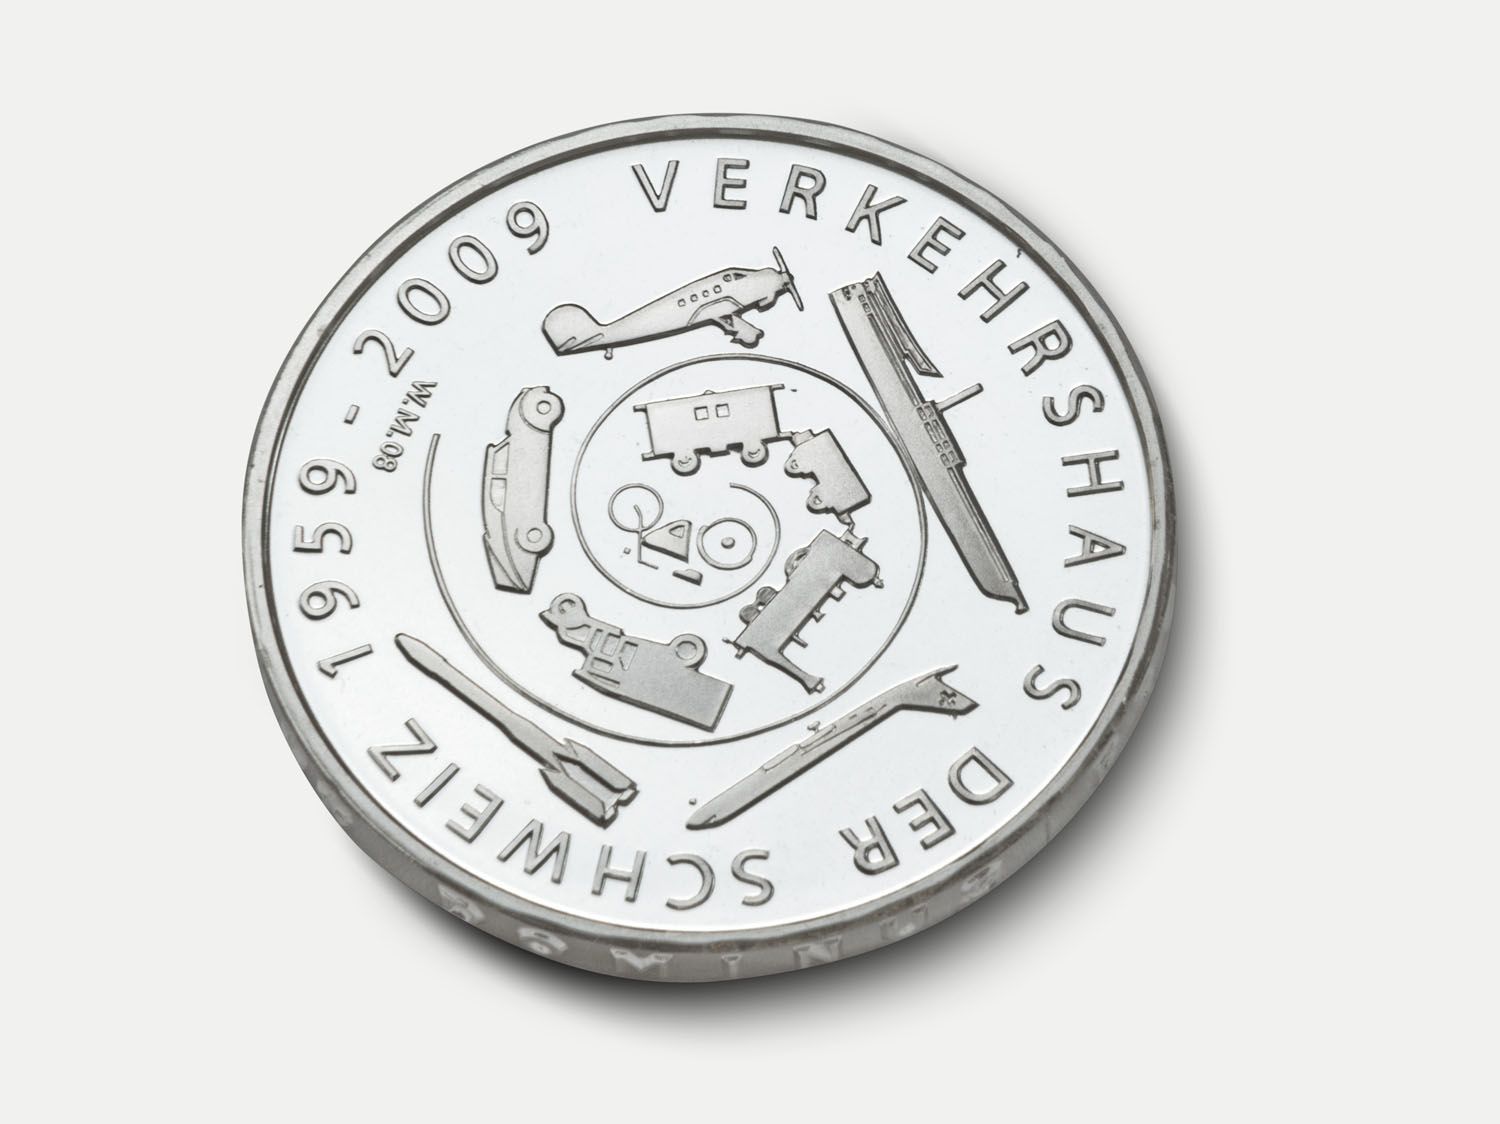 50 Jahre Verkehrshaus Jubiläumsmünze